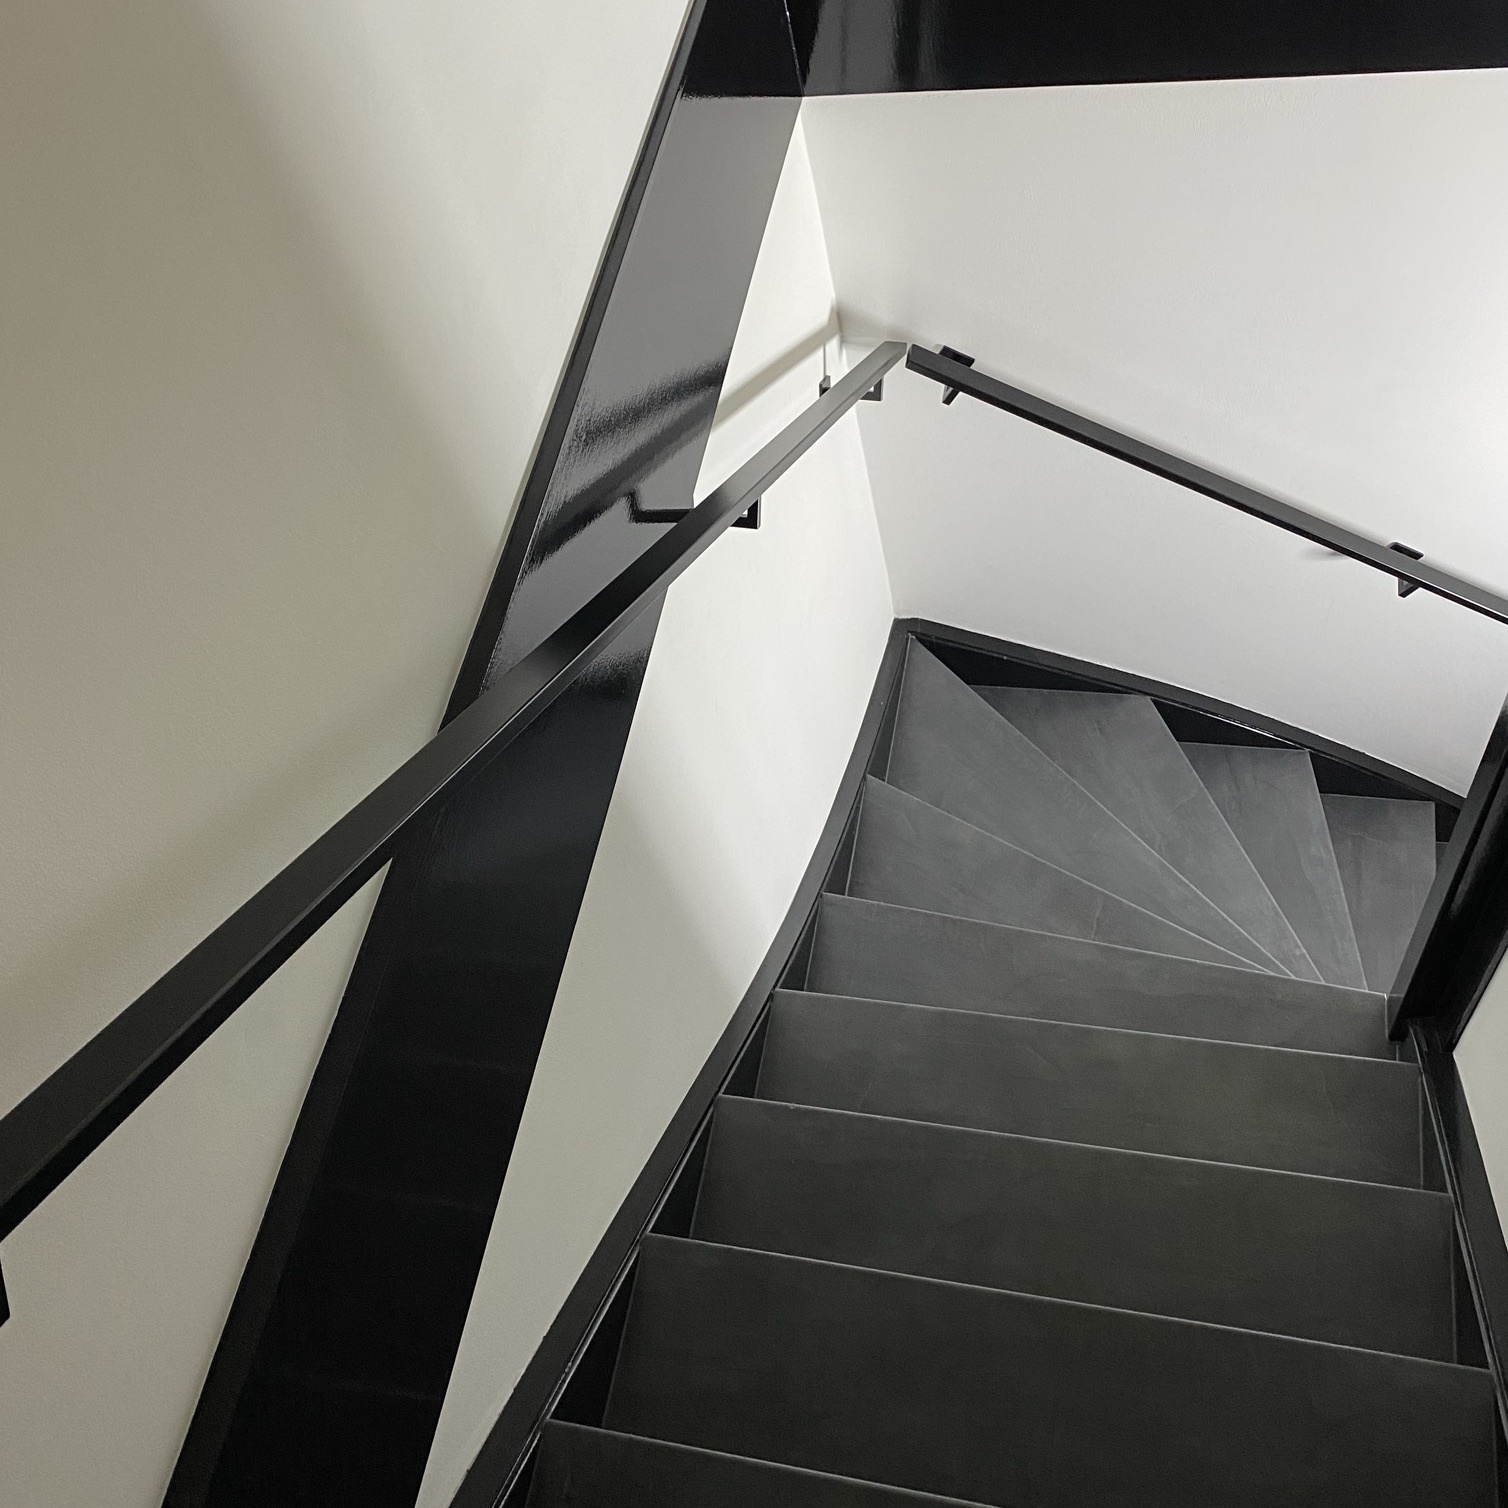  Handlauf schwarz beschichtet viereckig 40x20 Modell 11 - Rechteckige Treppengeländer - Treppenhandlauf mit schwarzer Pulverbeschichtung RAL 9005